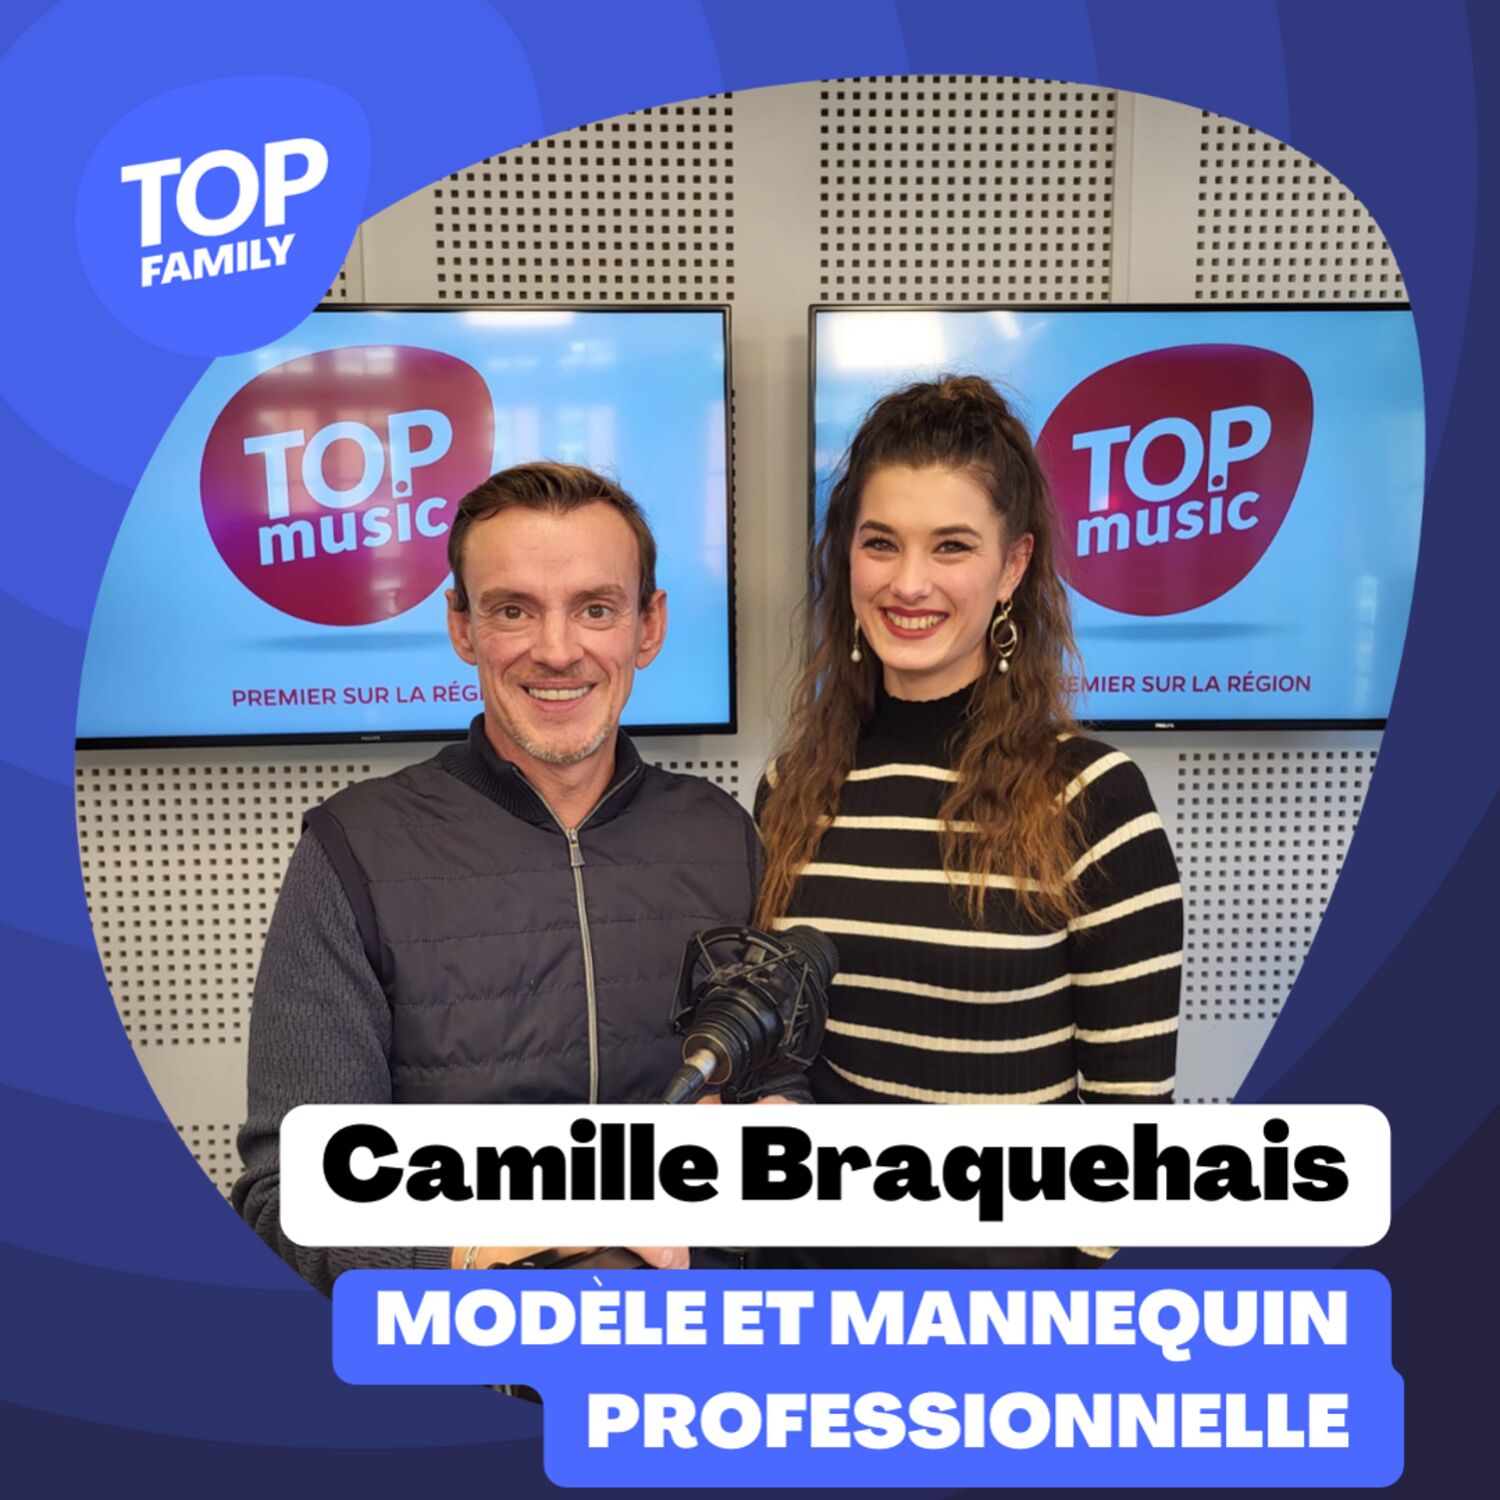 Camille Braquehais vous raconte son parcours !